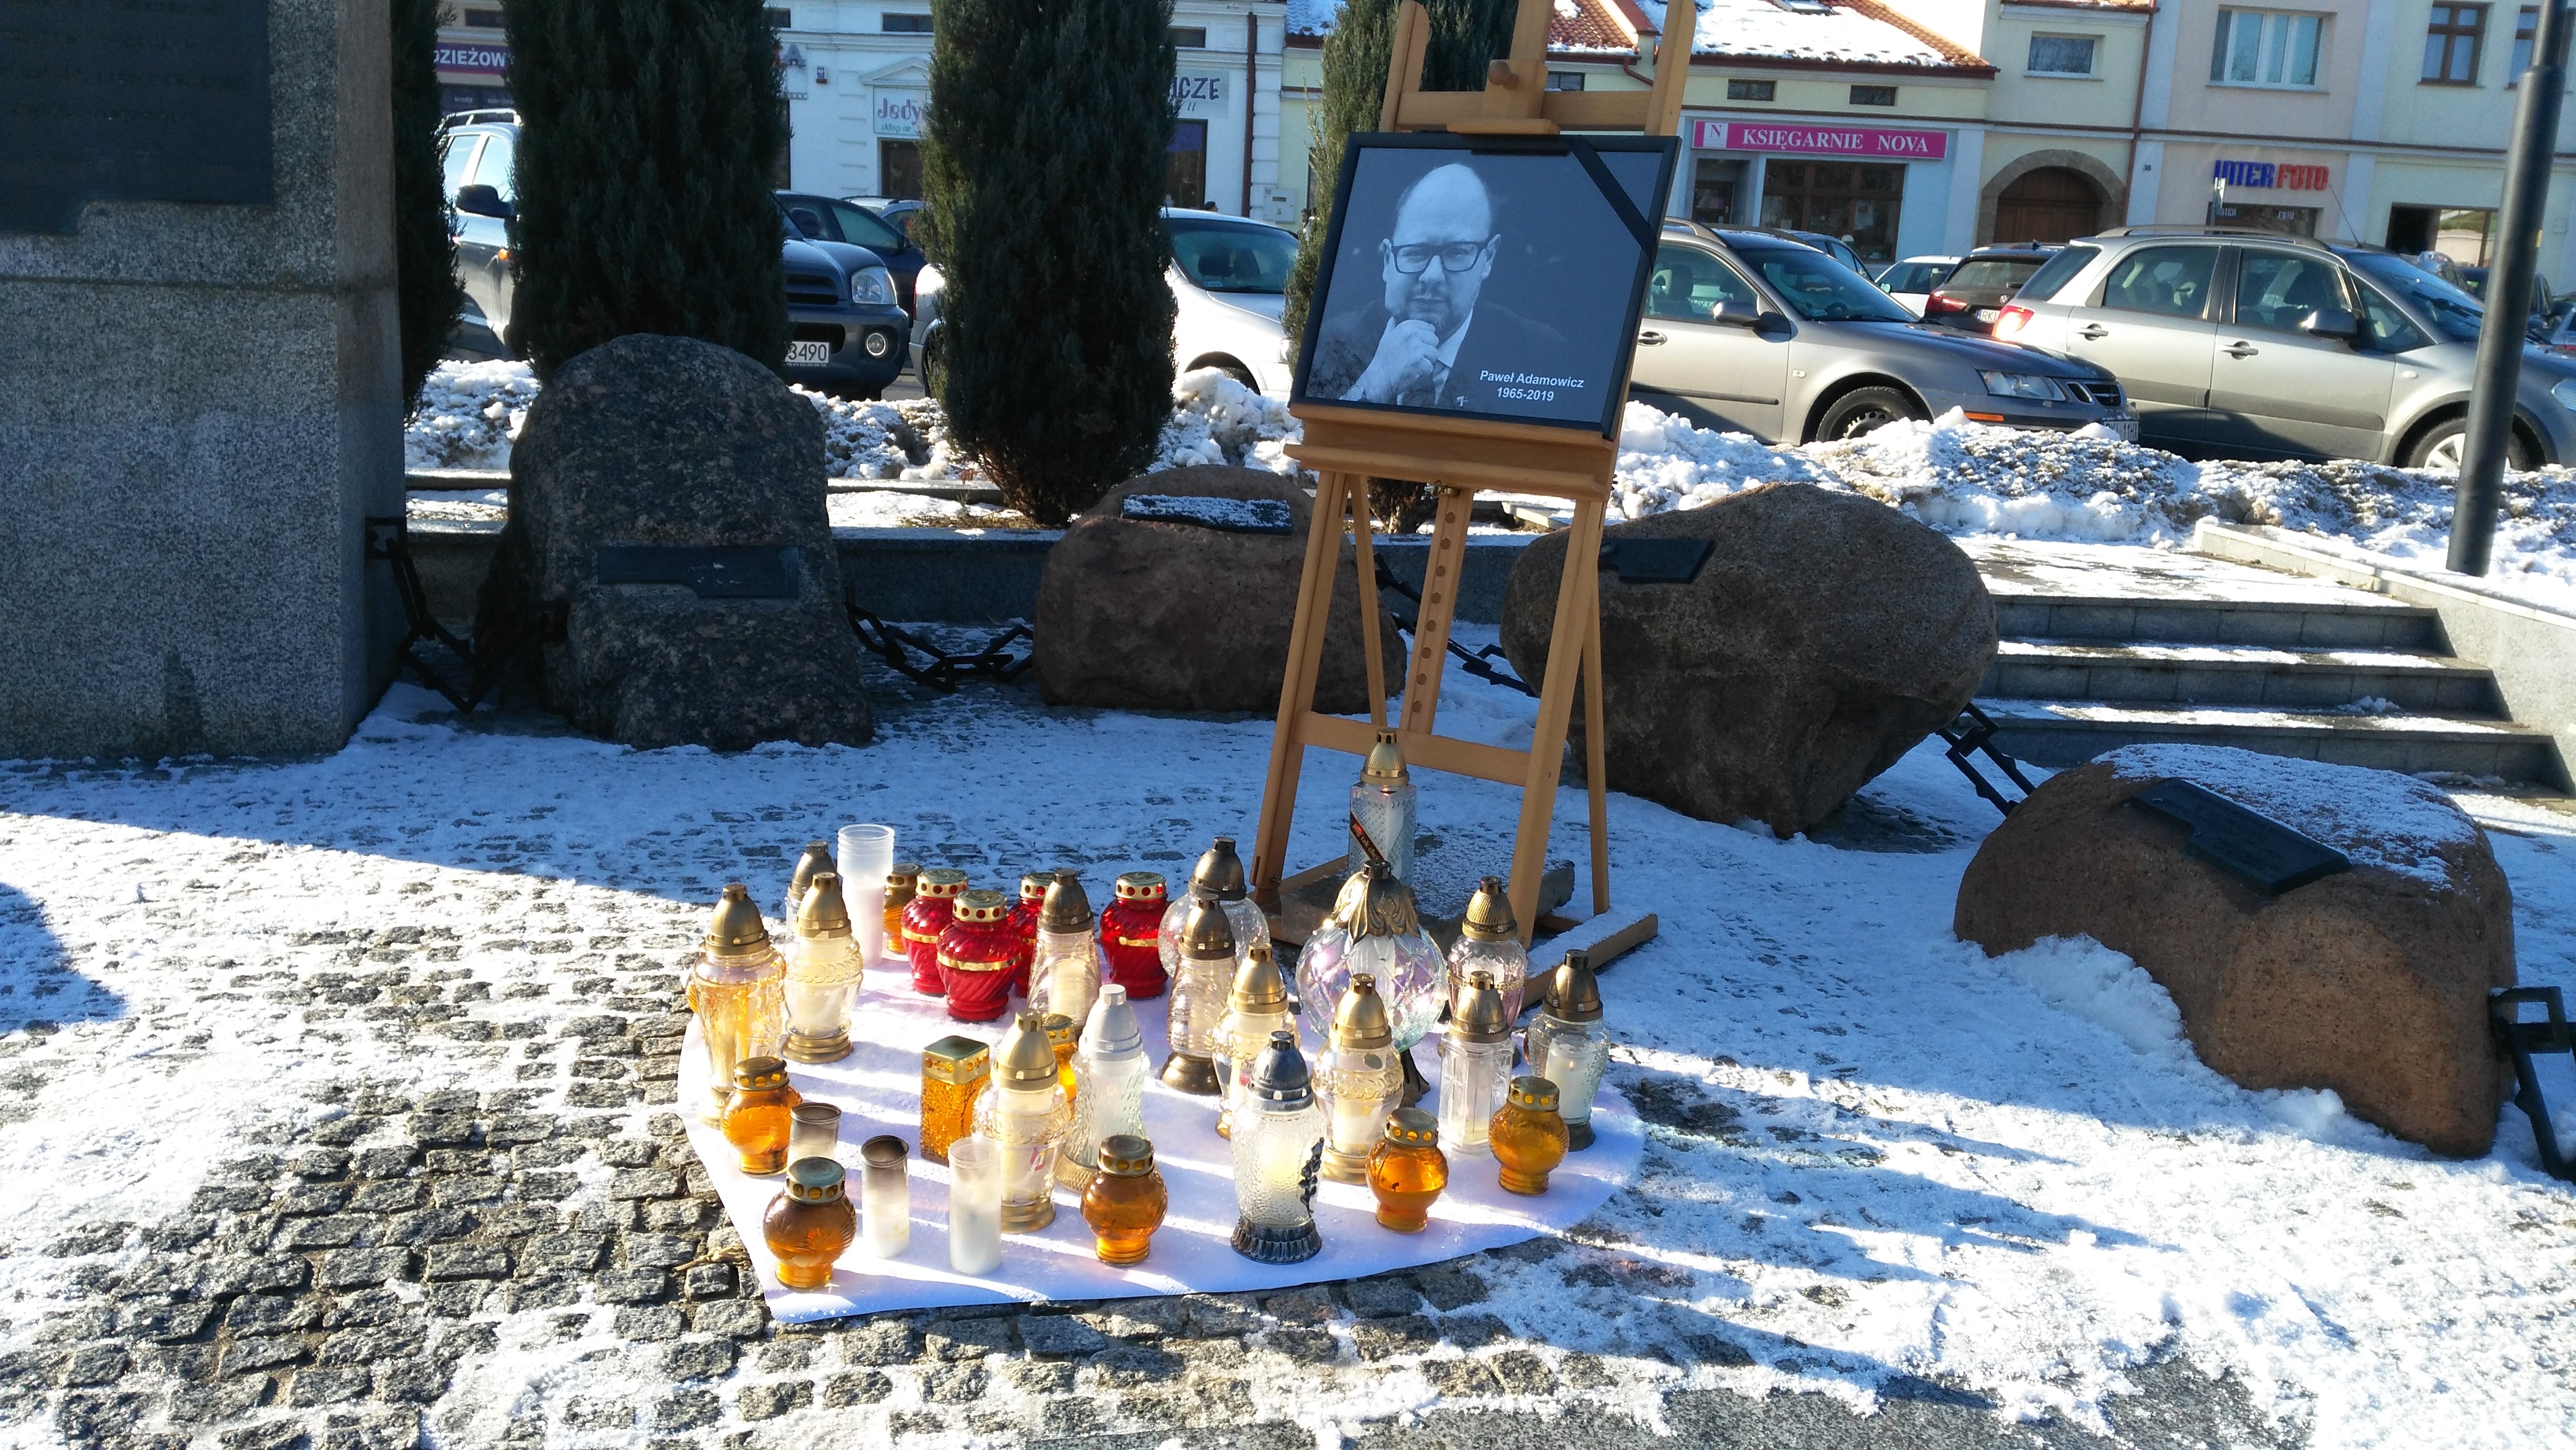 Kolbuszowianie spotkali się dziś w samo południe by uczcić i pożegnać zmarłego Pawła Adamowicza, prezydenta Gdańska [ZDJĘCIA] - Zdjęcie główne